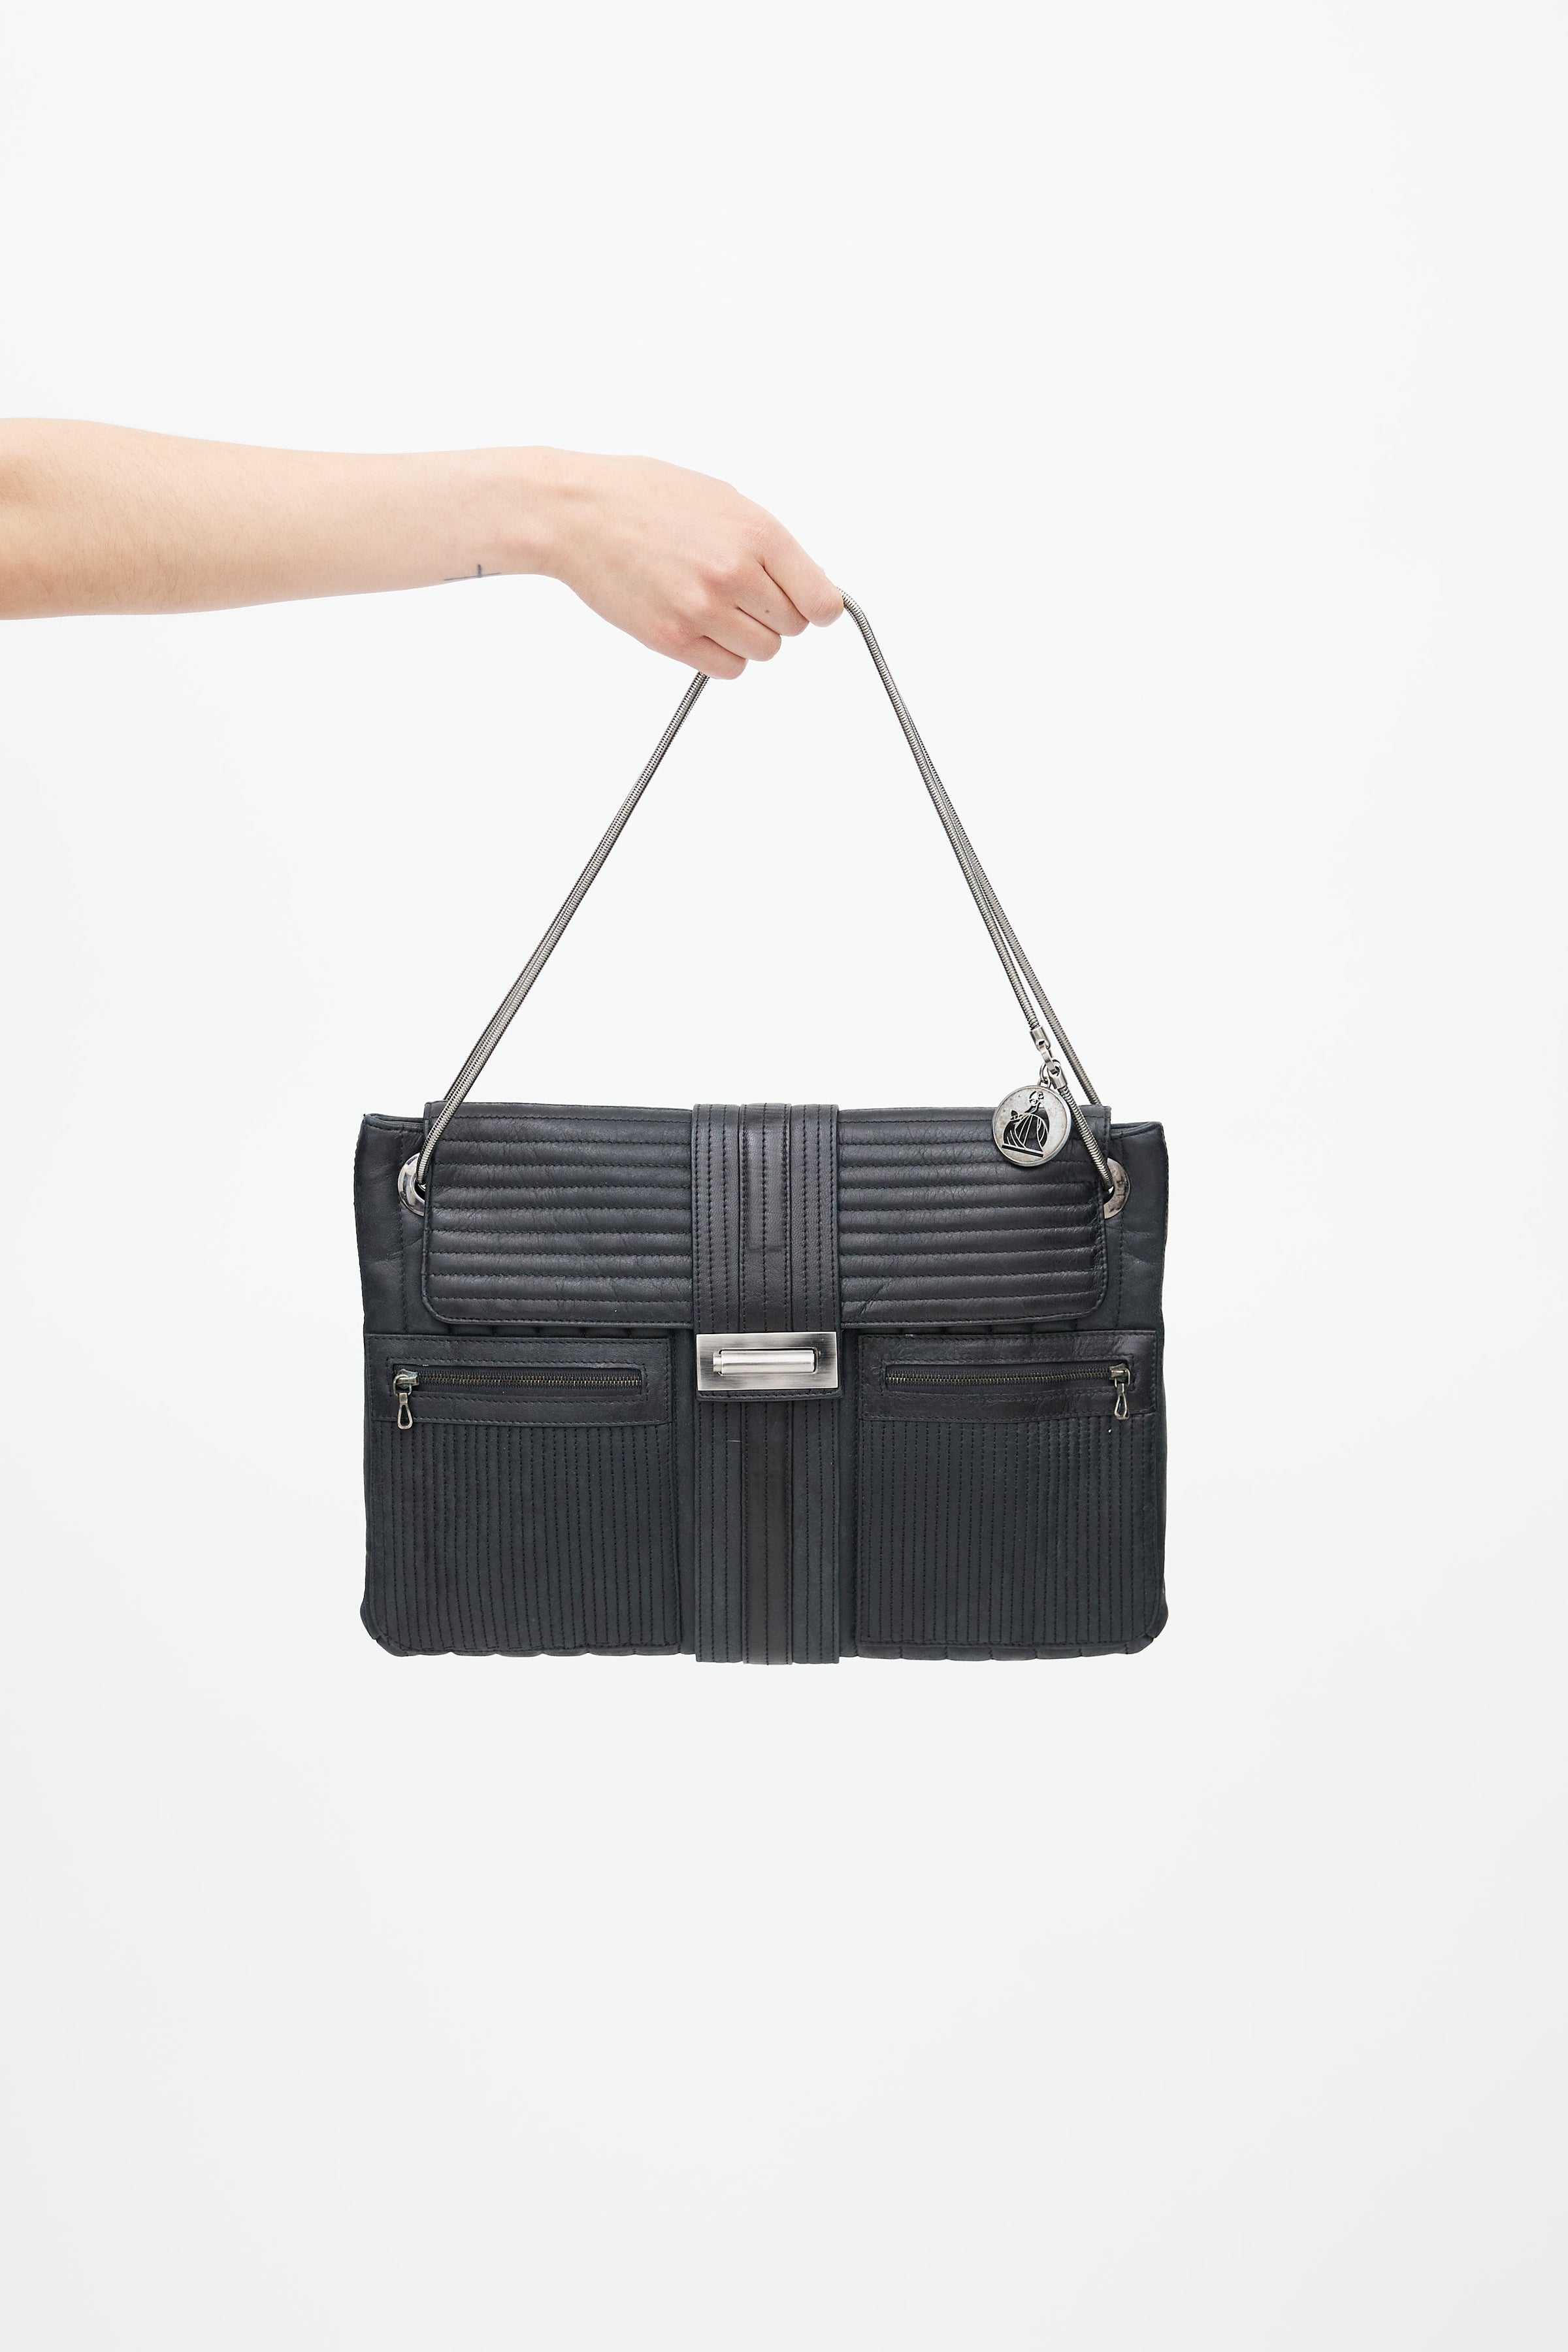 Lanvin Authenticated Bag Charm